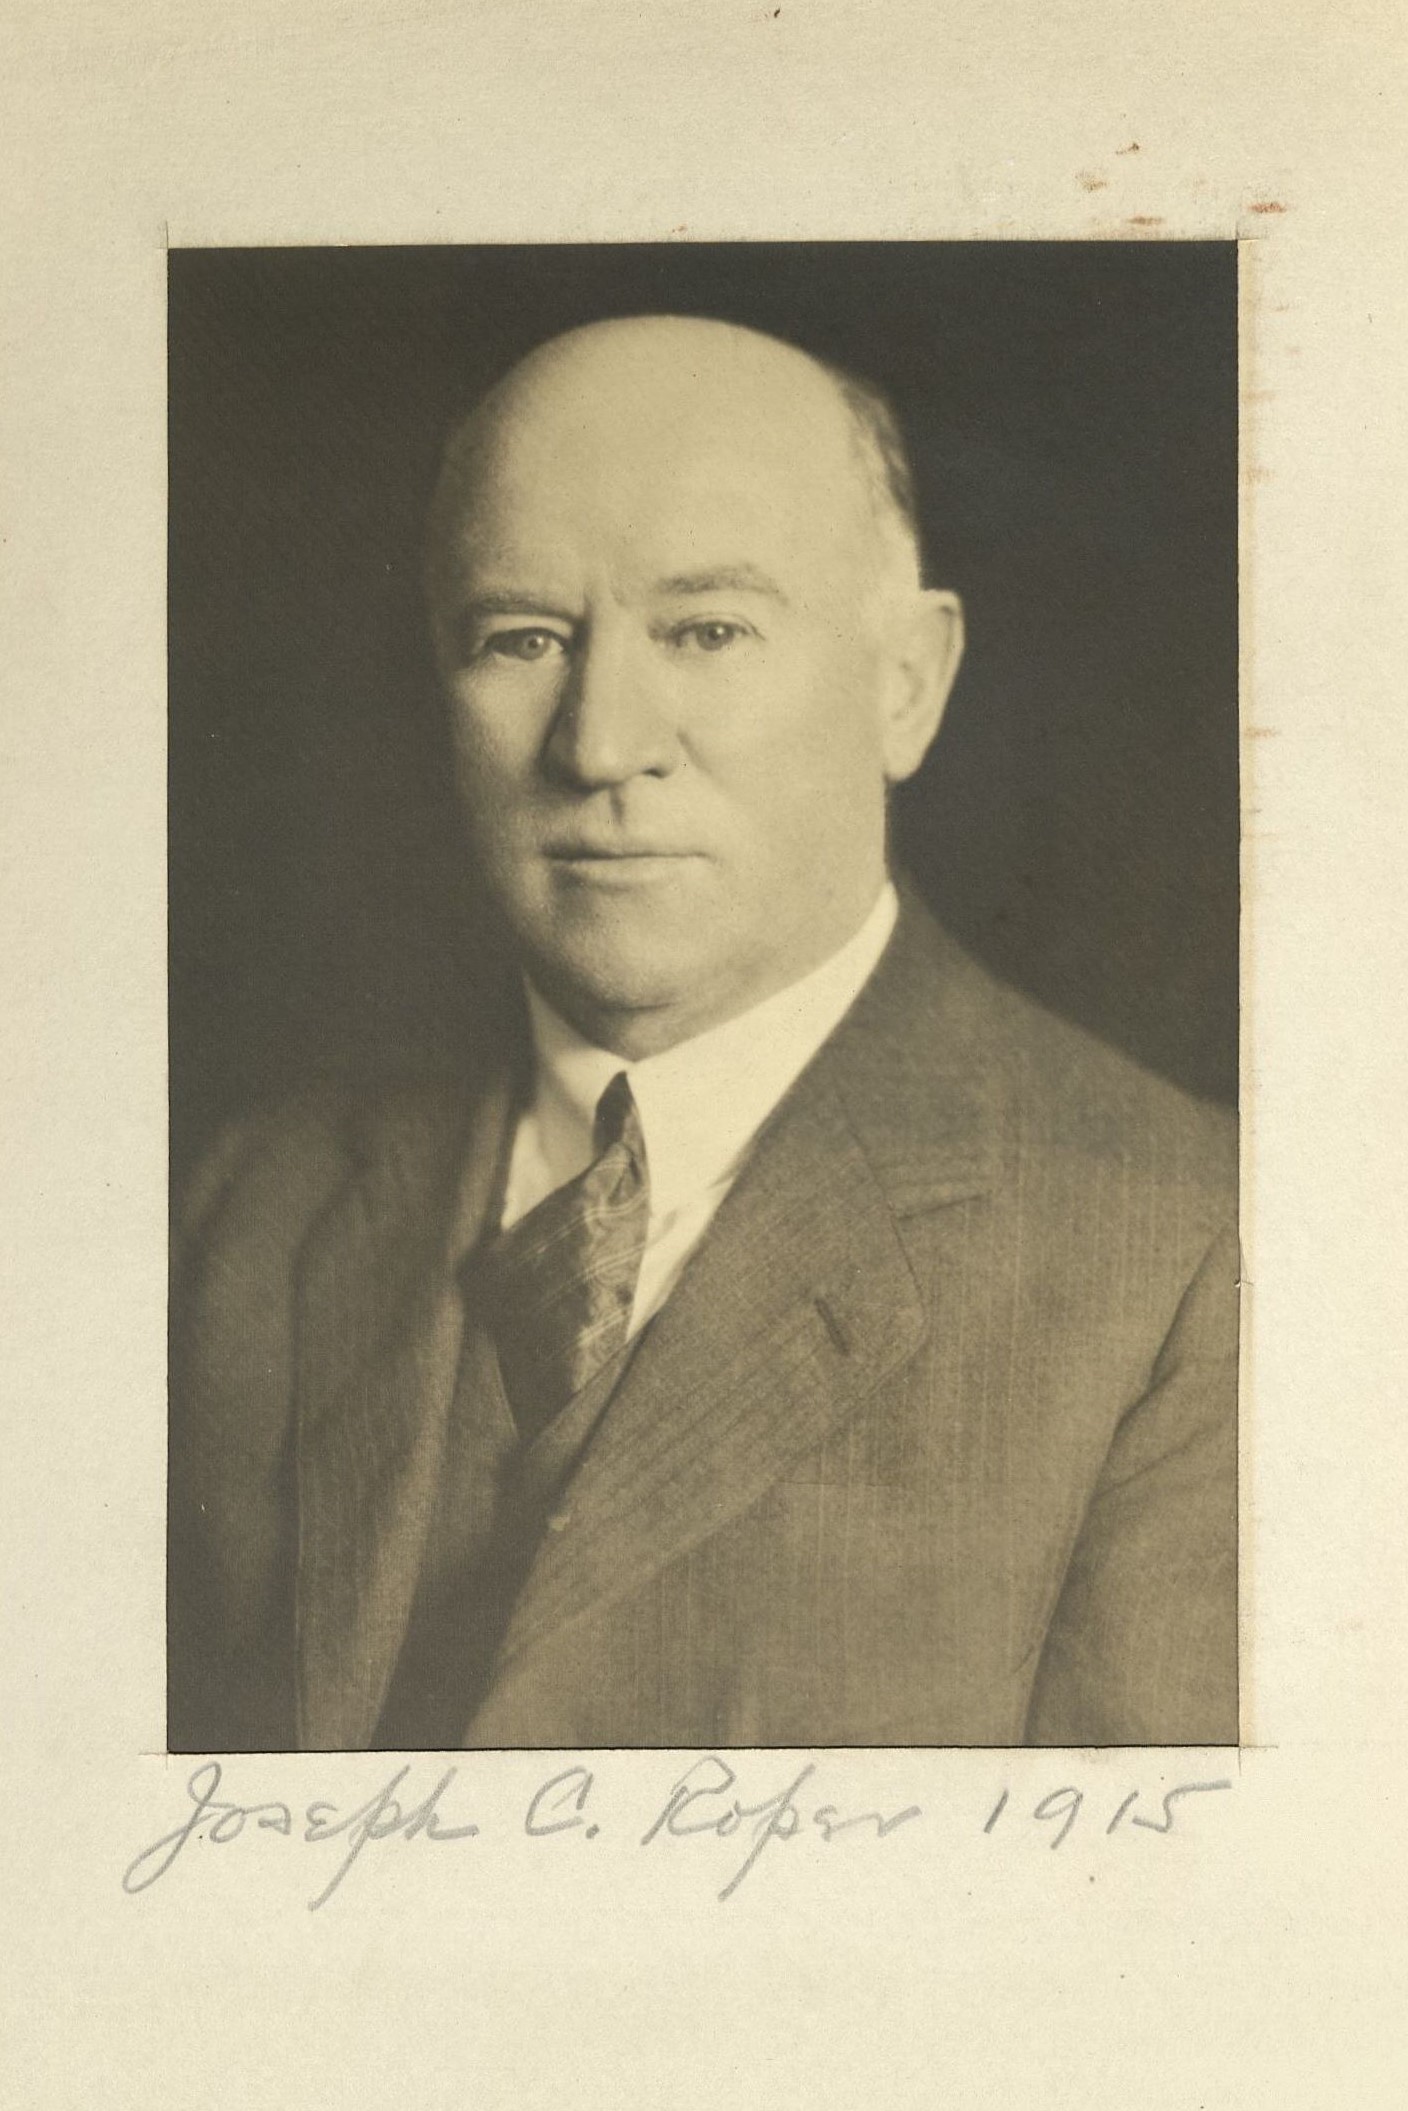 Member portrait of Joseph C. Roper